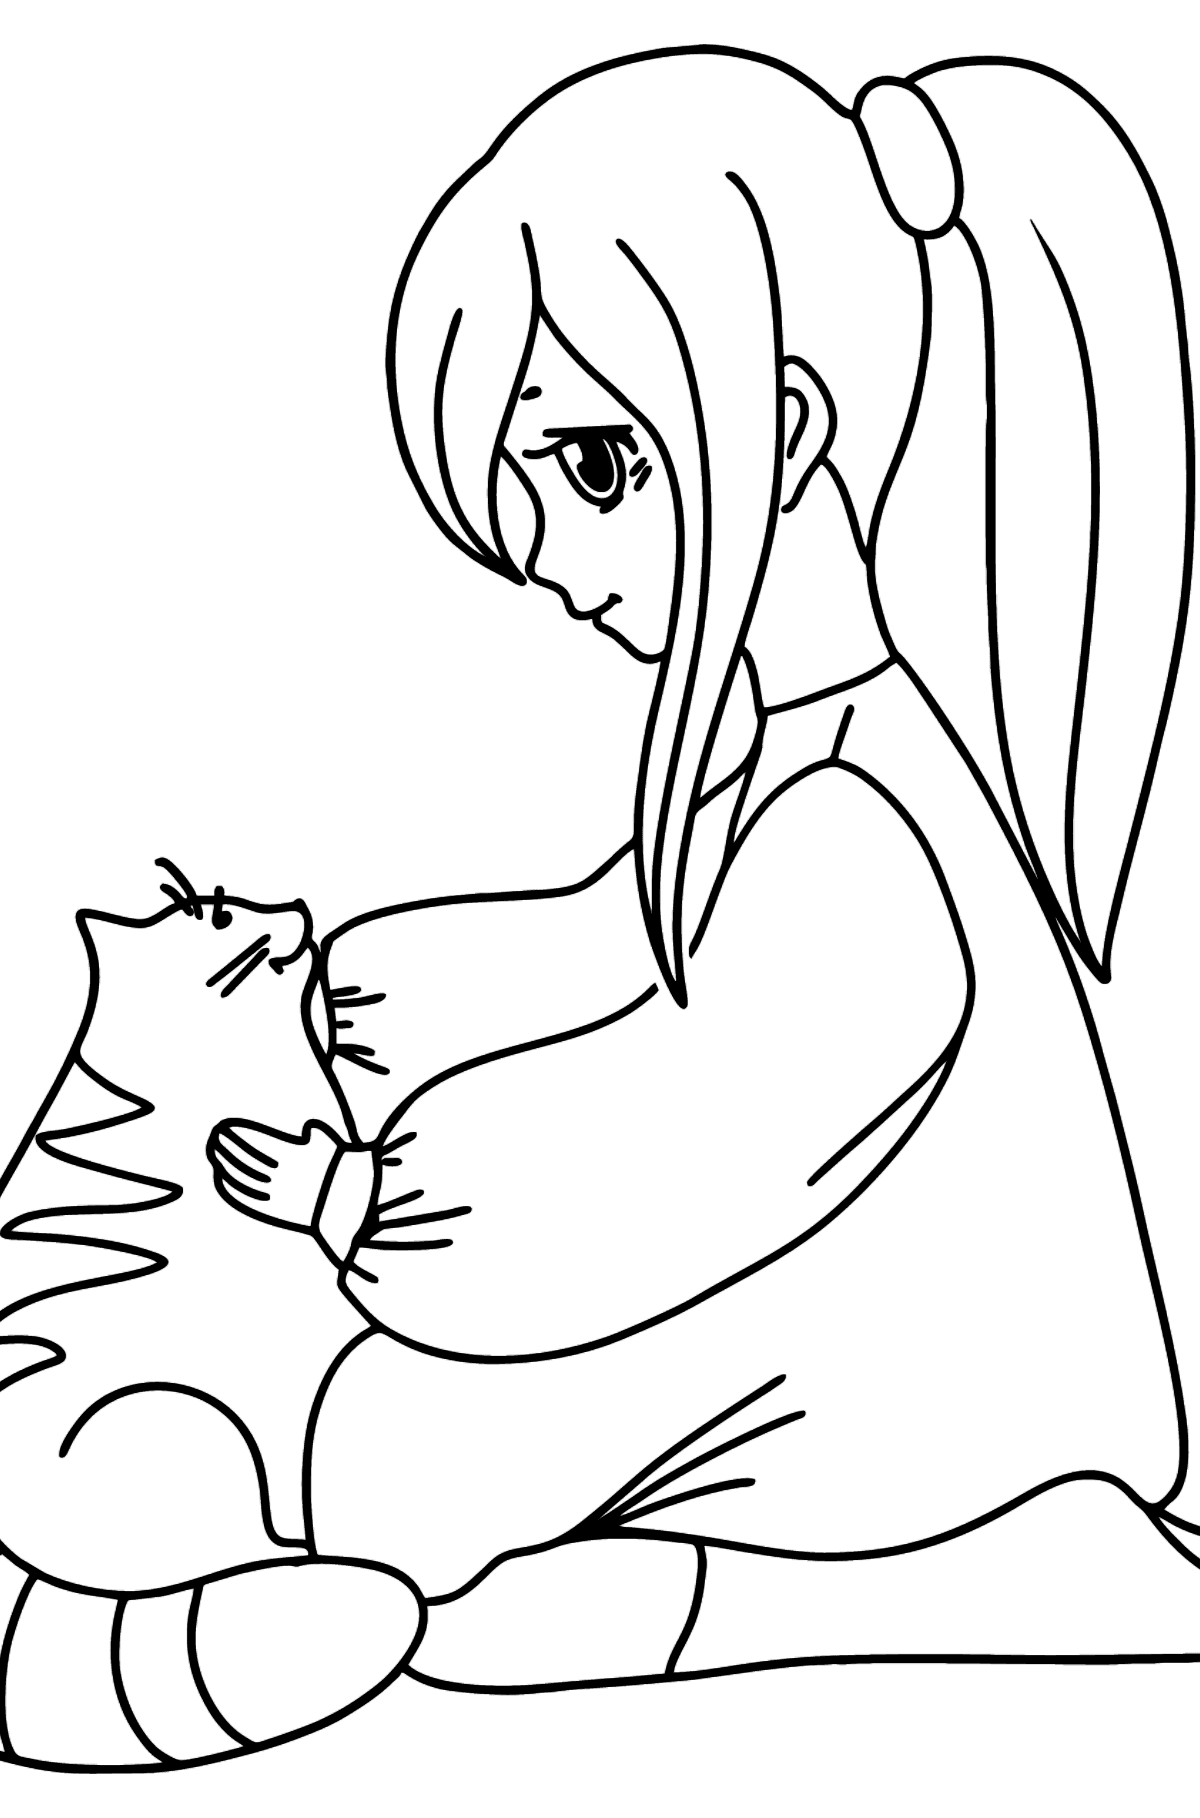 Anime meisje en kat kleurplaat - kleurplaten voor kinderen